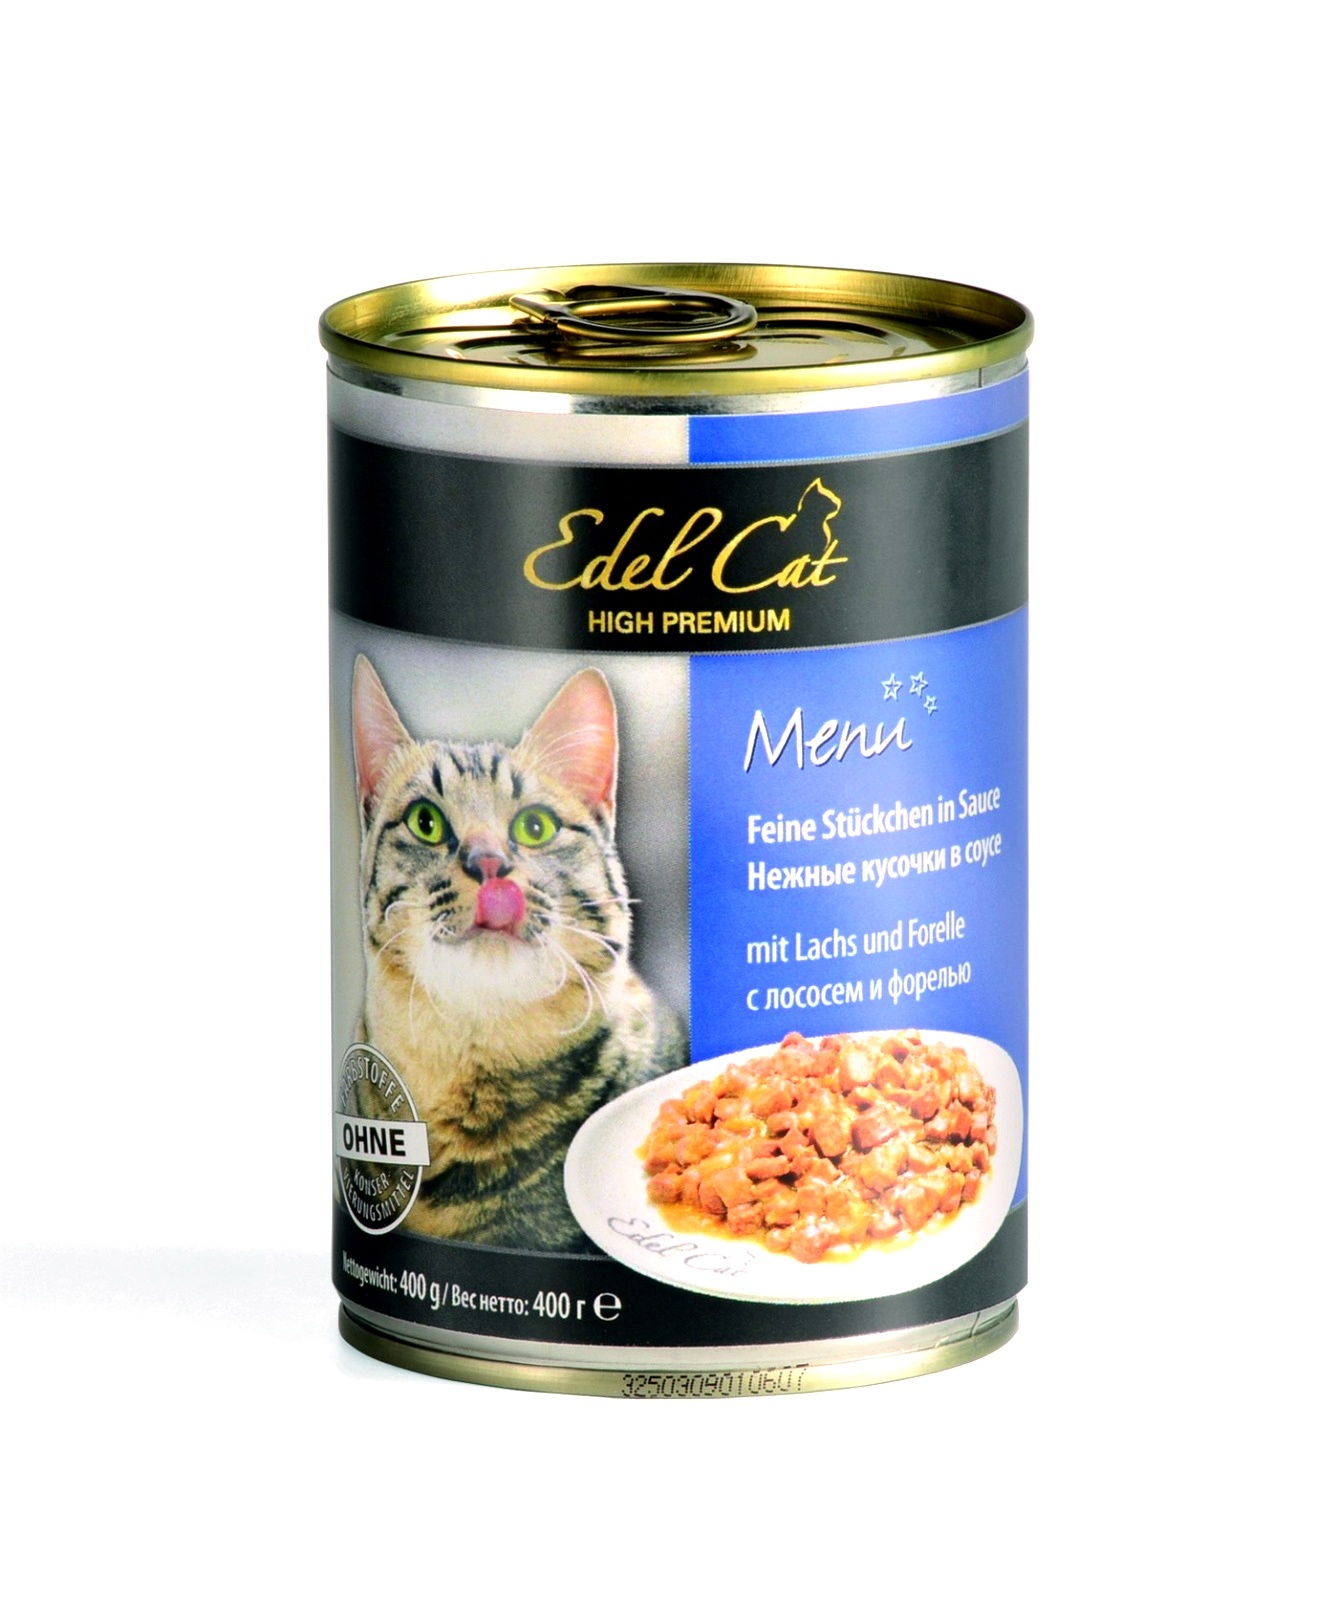 Edel Cat Edel Cat нежные кусочки в соусе с лососем и форелью (400 г) edel cat нежные кусочки в соусе 3 вида мяса 0 4 кг 21792 2 шт